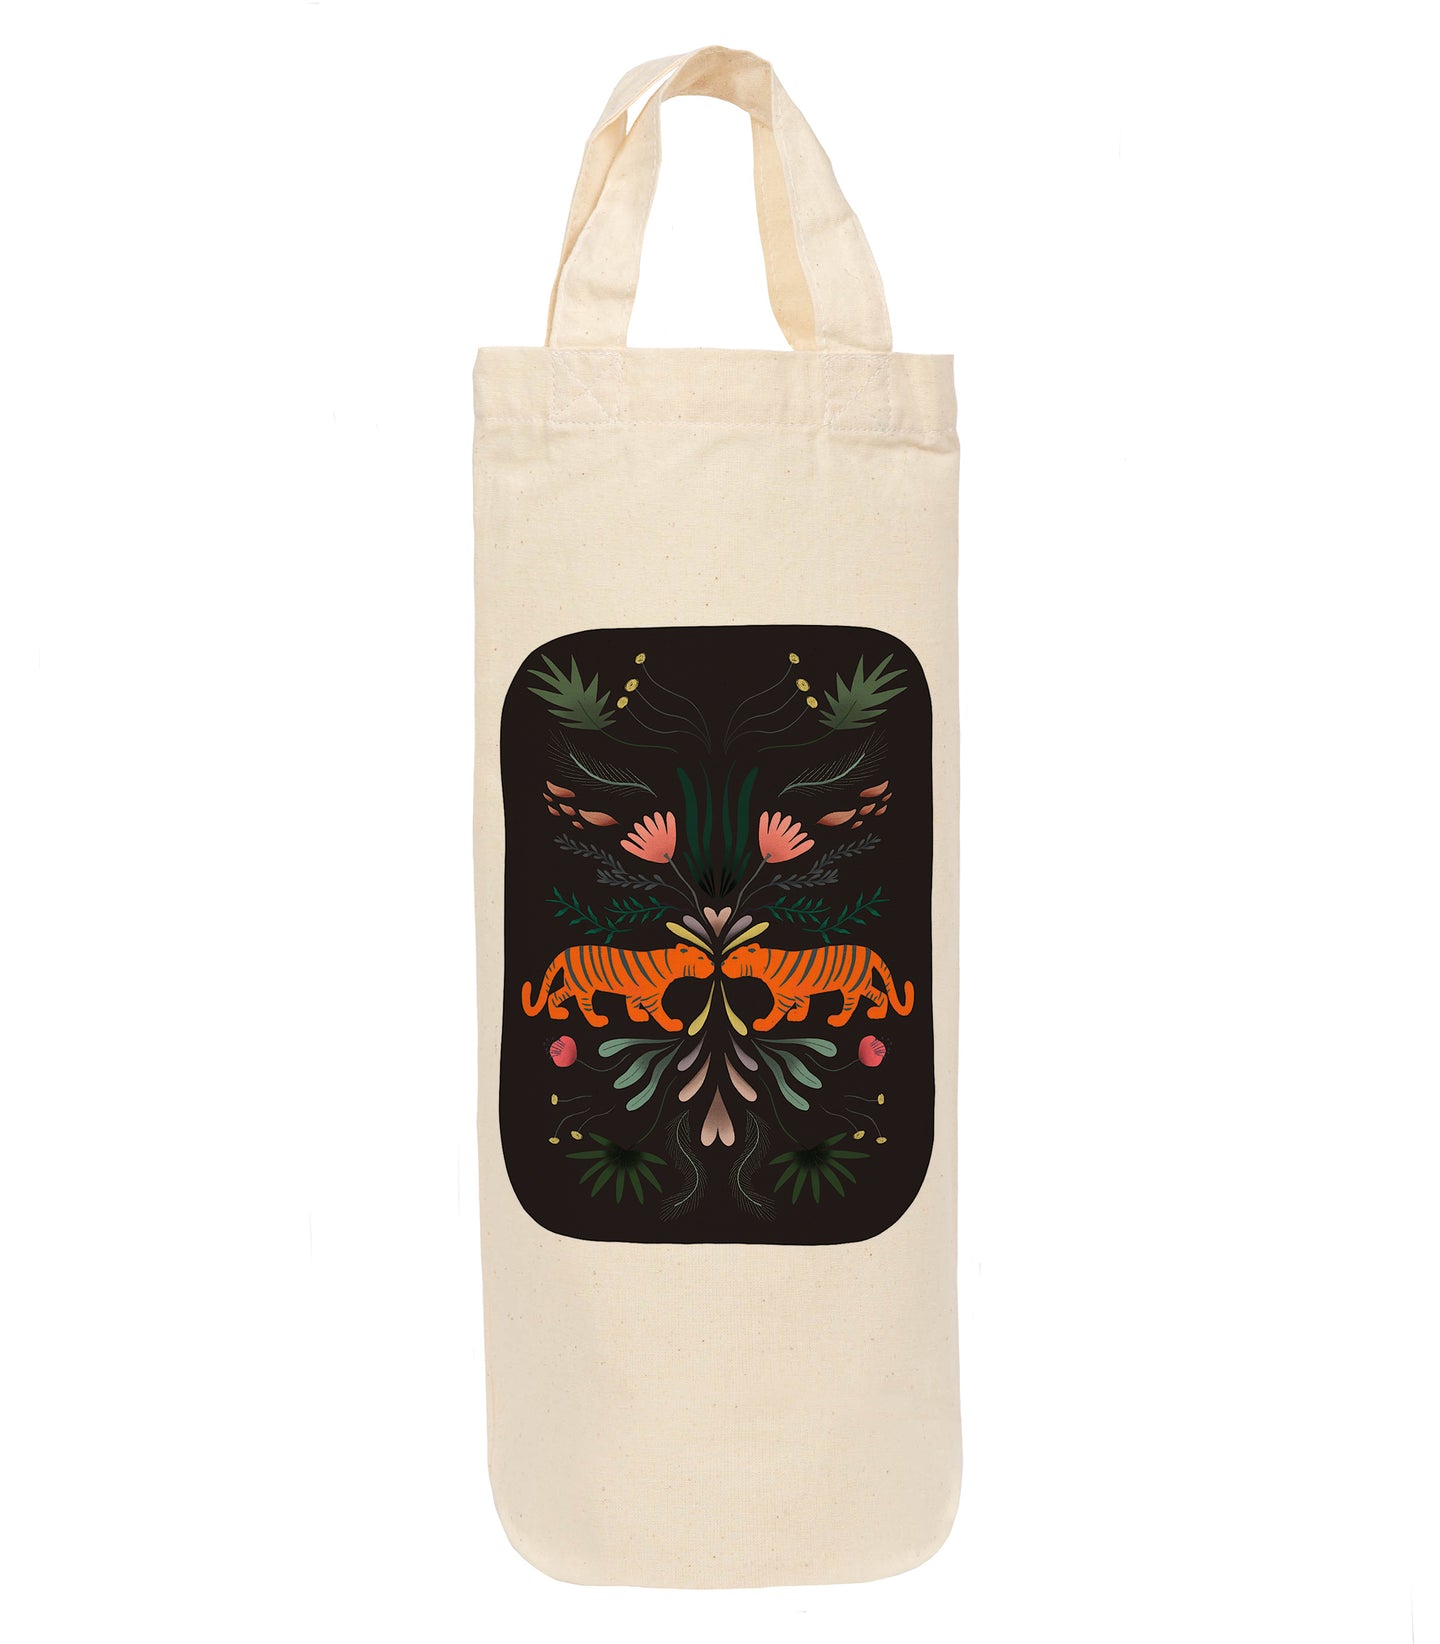 Tiger bottle bag - wine tote - gift bag